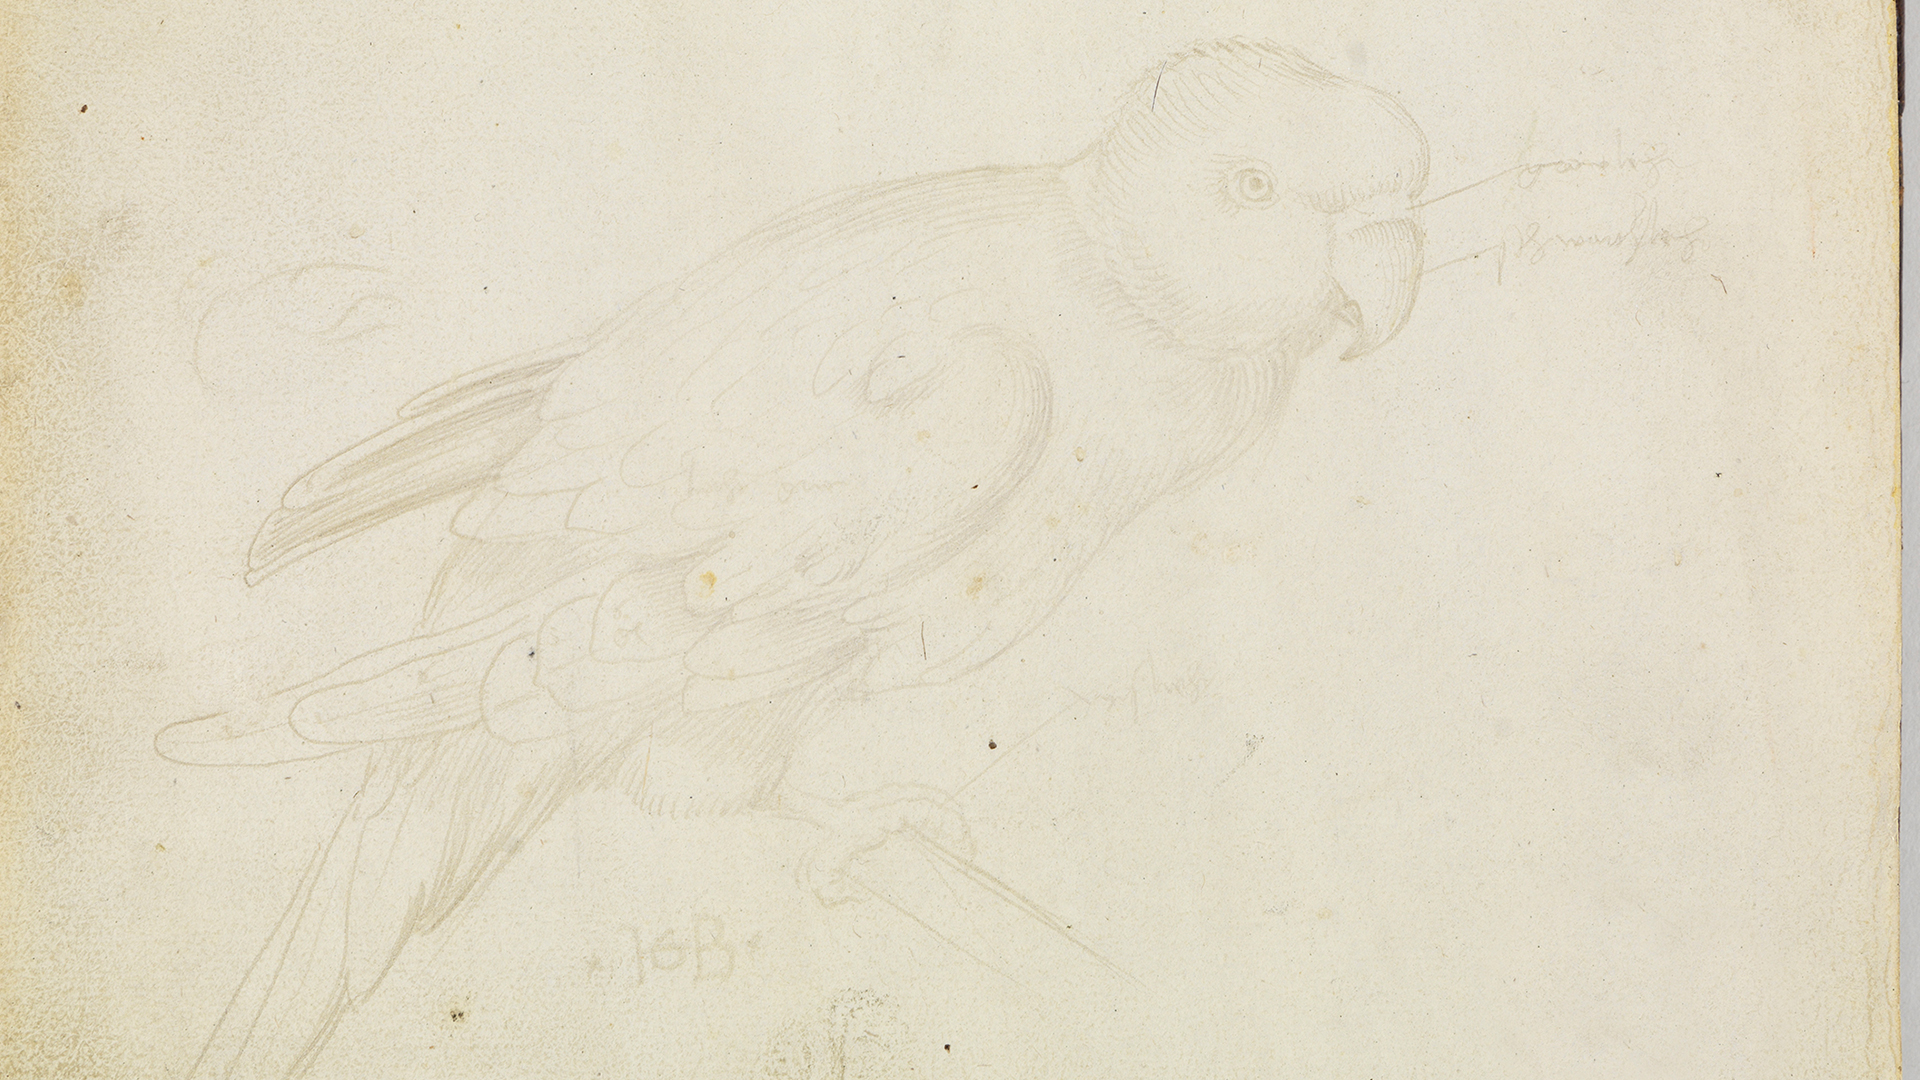 Abbildung eines exotischen Vogels aus Hans Baldung Griens Skizzenbuch